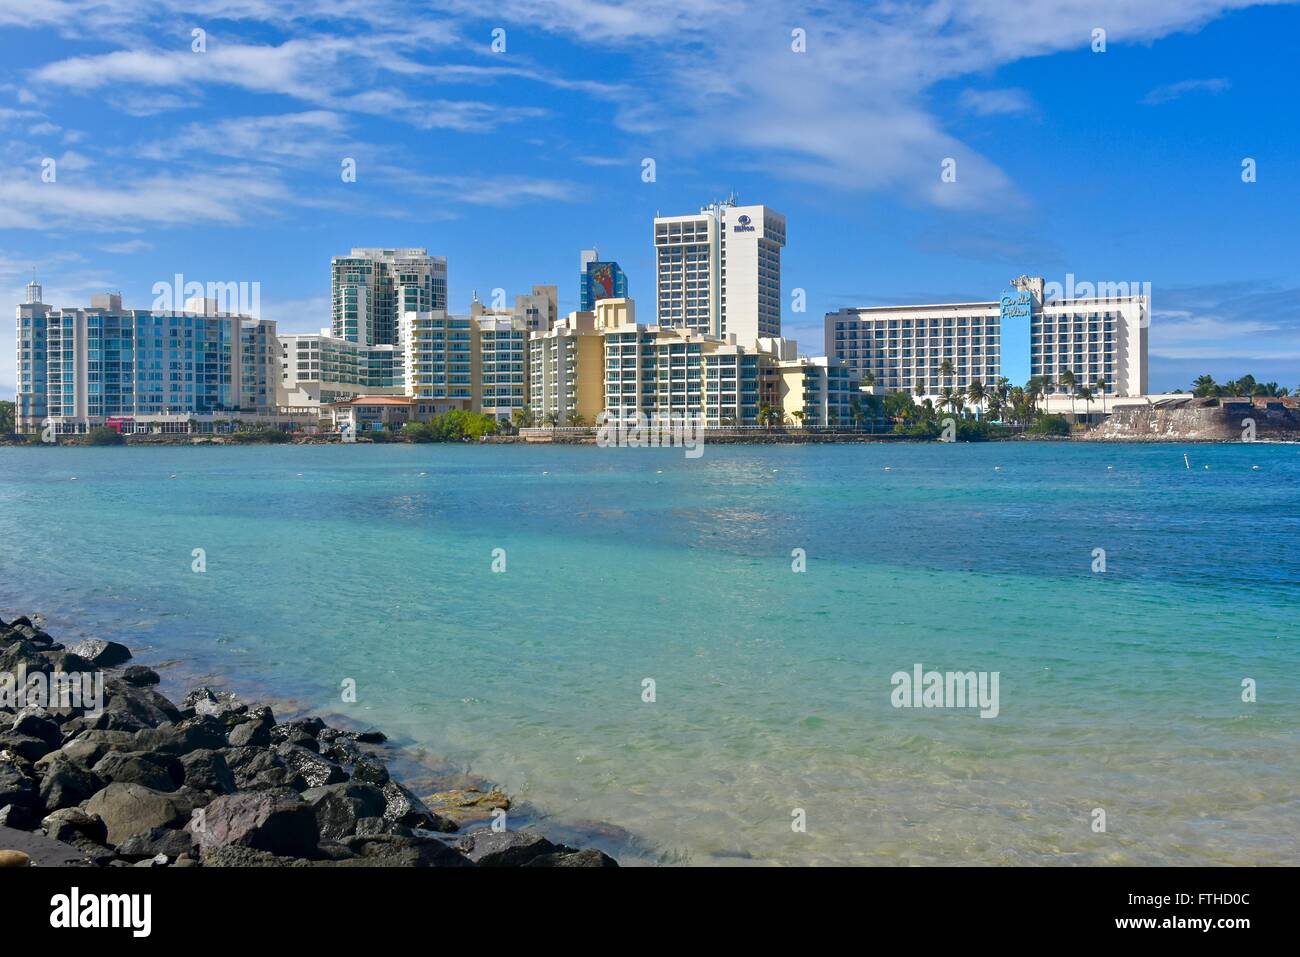 Condado beach in Puerto Rico Stock Photo